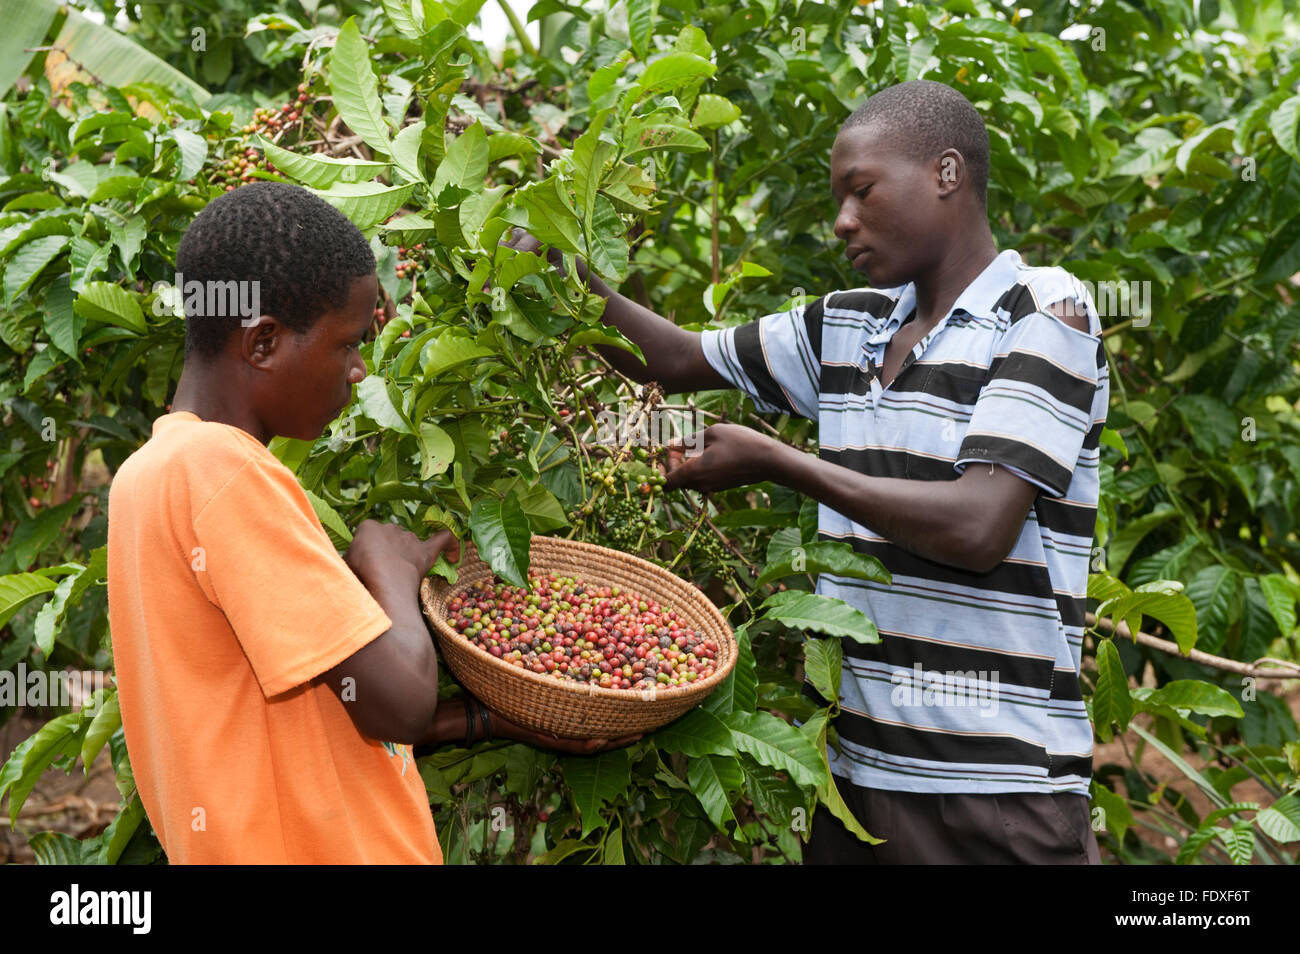 Ugandan men picking coffee beans from tree. Uganda Stock Photo